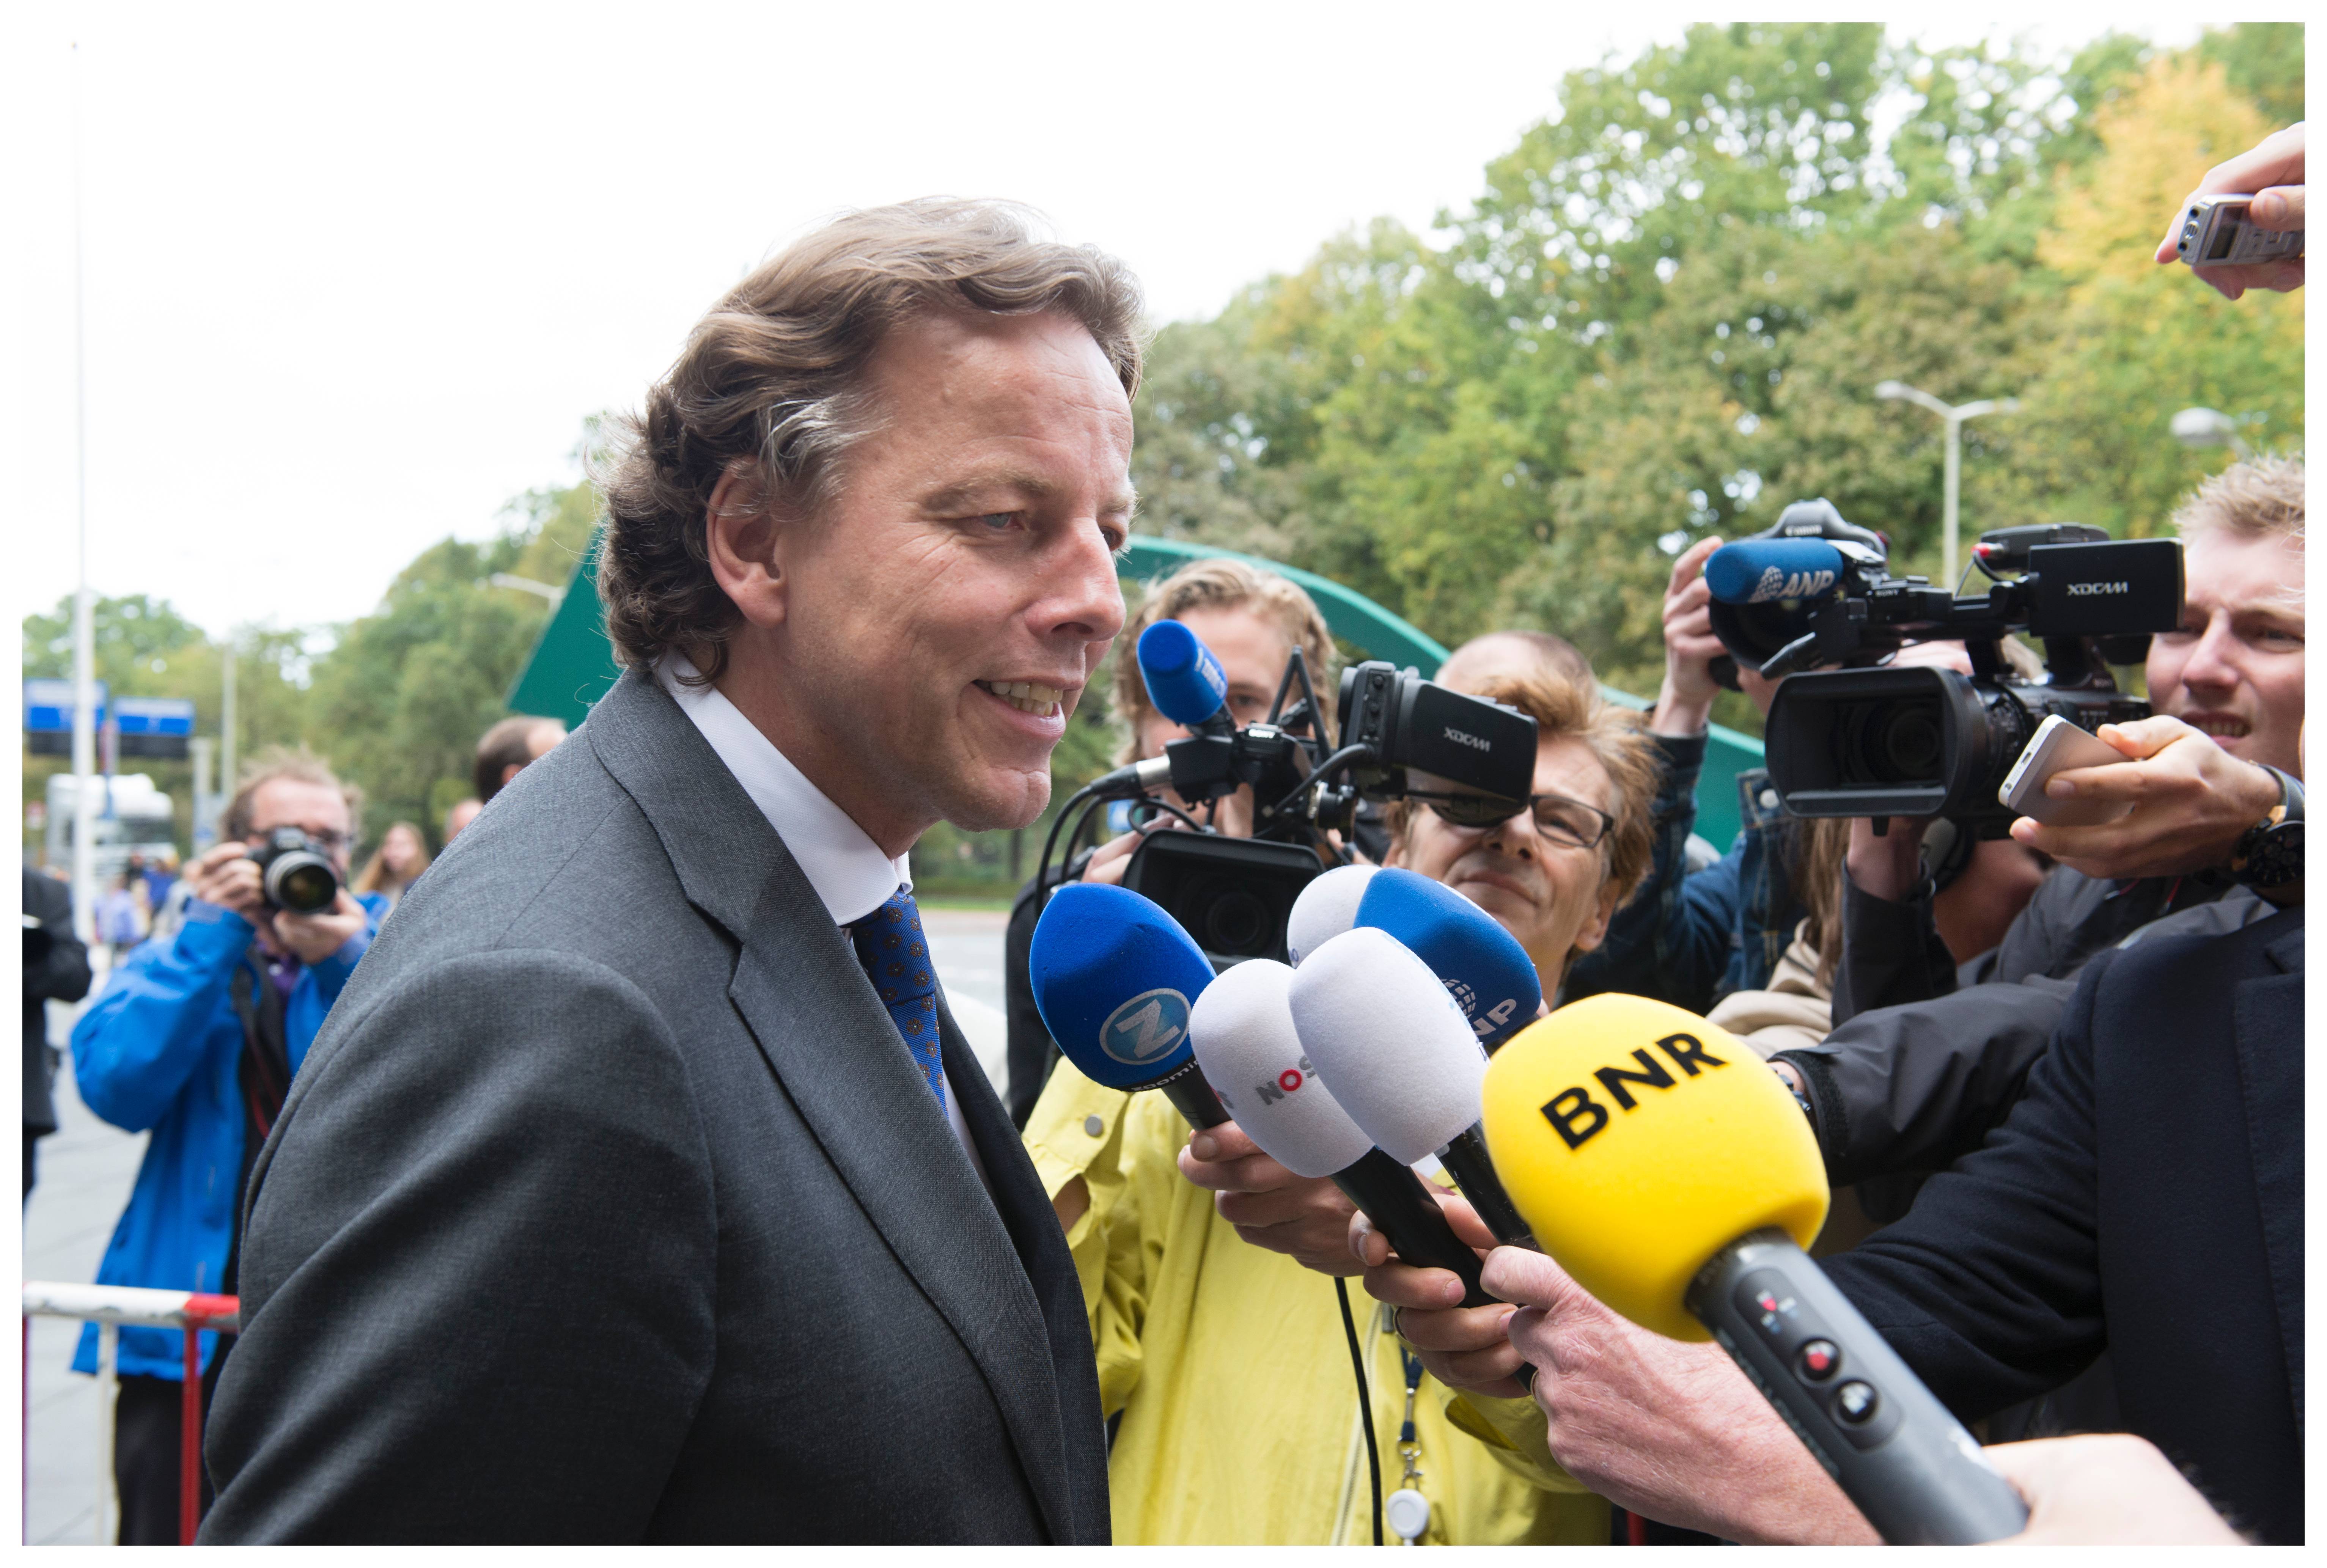 Dutch foreign minister Bert Koenders